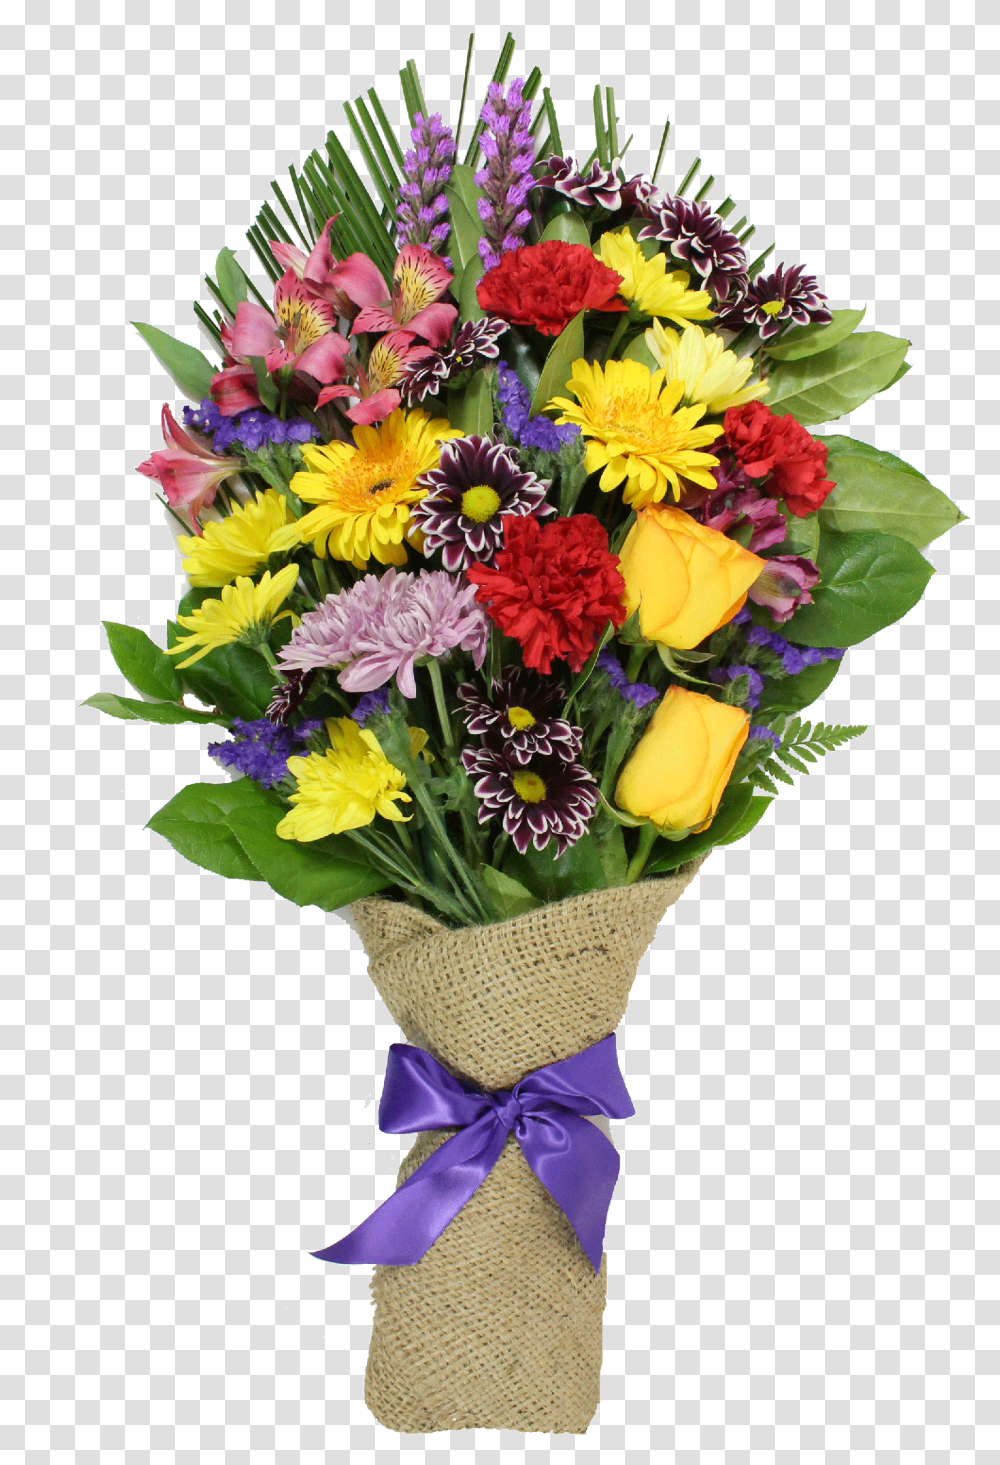 Flower Bokeh Images Free Download, Plant, Flower Bouquet, Flower Arrangement, Blossom Transparent Png